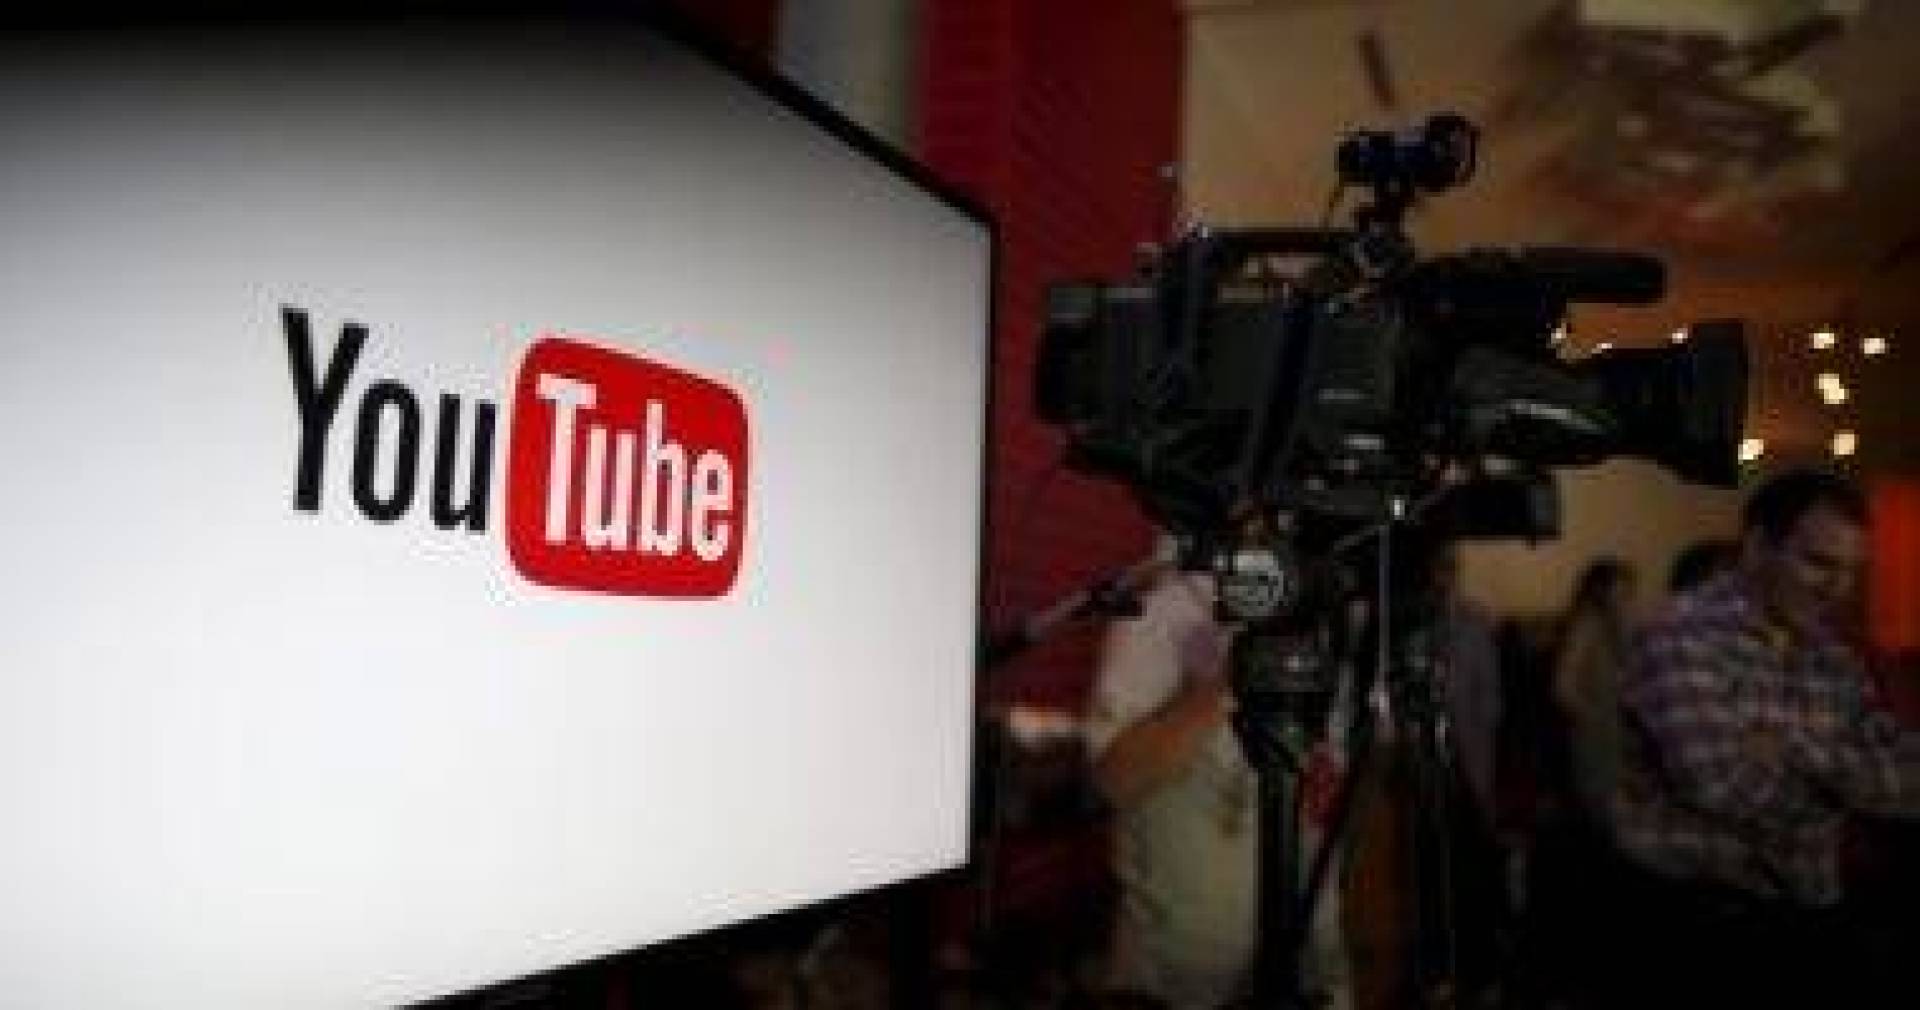 موقع YouTube يعلن عن خطة جديدة طويلة المدى للتعامل مع المعلومات الطبية الخاطئة